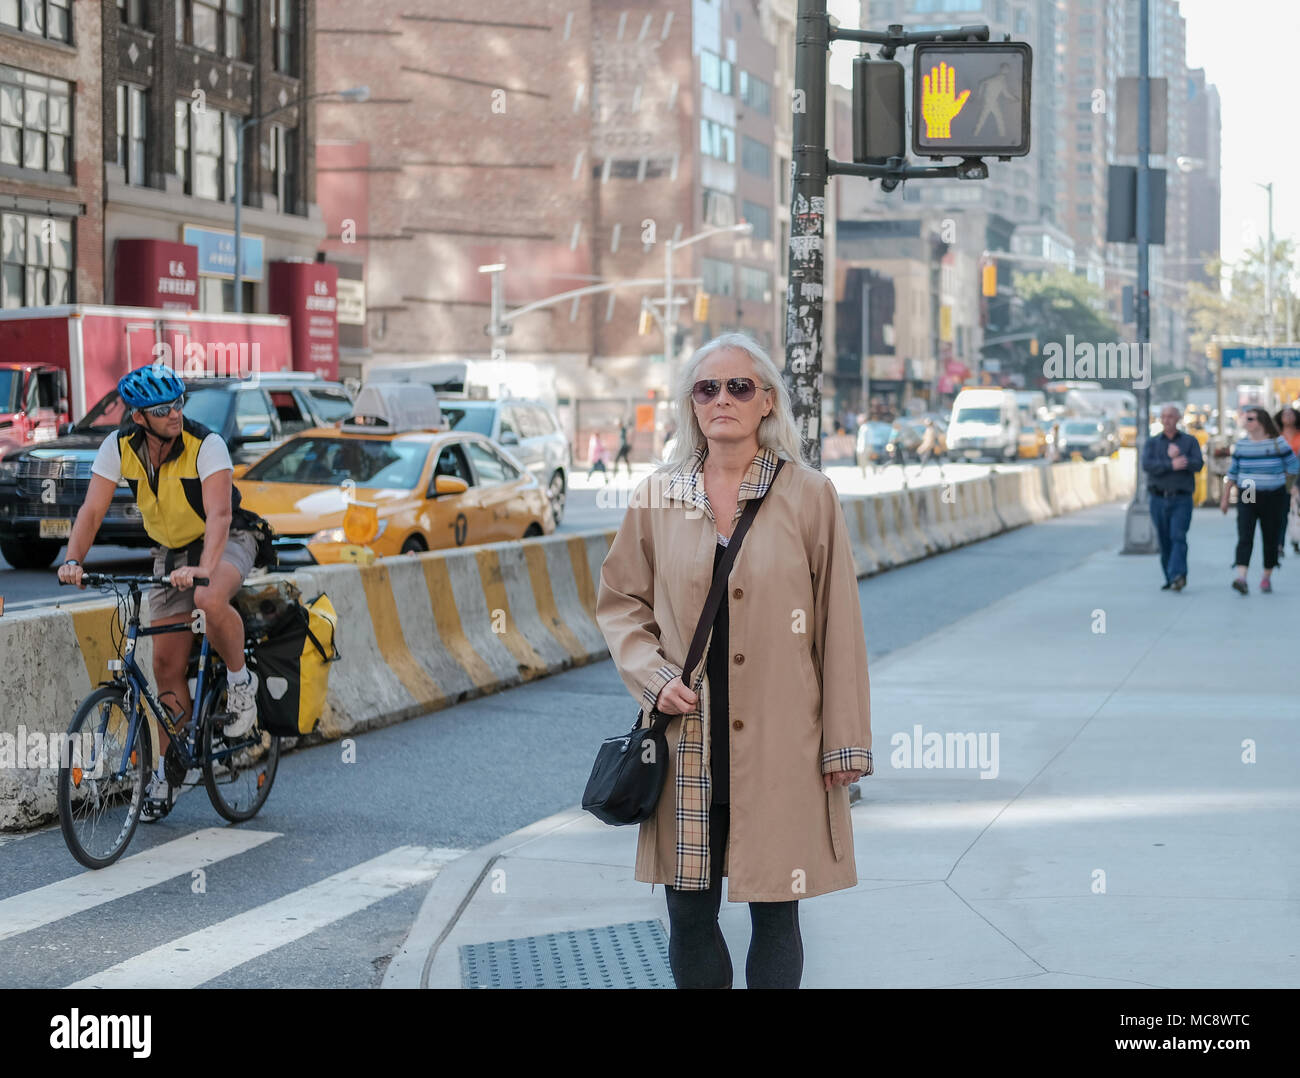 Donna di mezza età visto indossare una famosa marca di ricoprire in attesa in corrispondenza di un incrocio stradale in New York City. Lo sfondo mostra un ciclista e un taxi giallo. Foto Stock